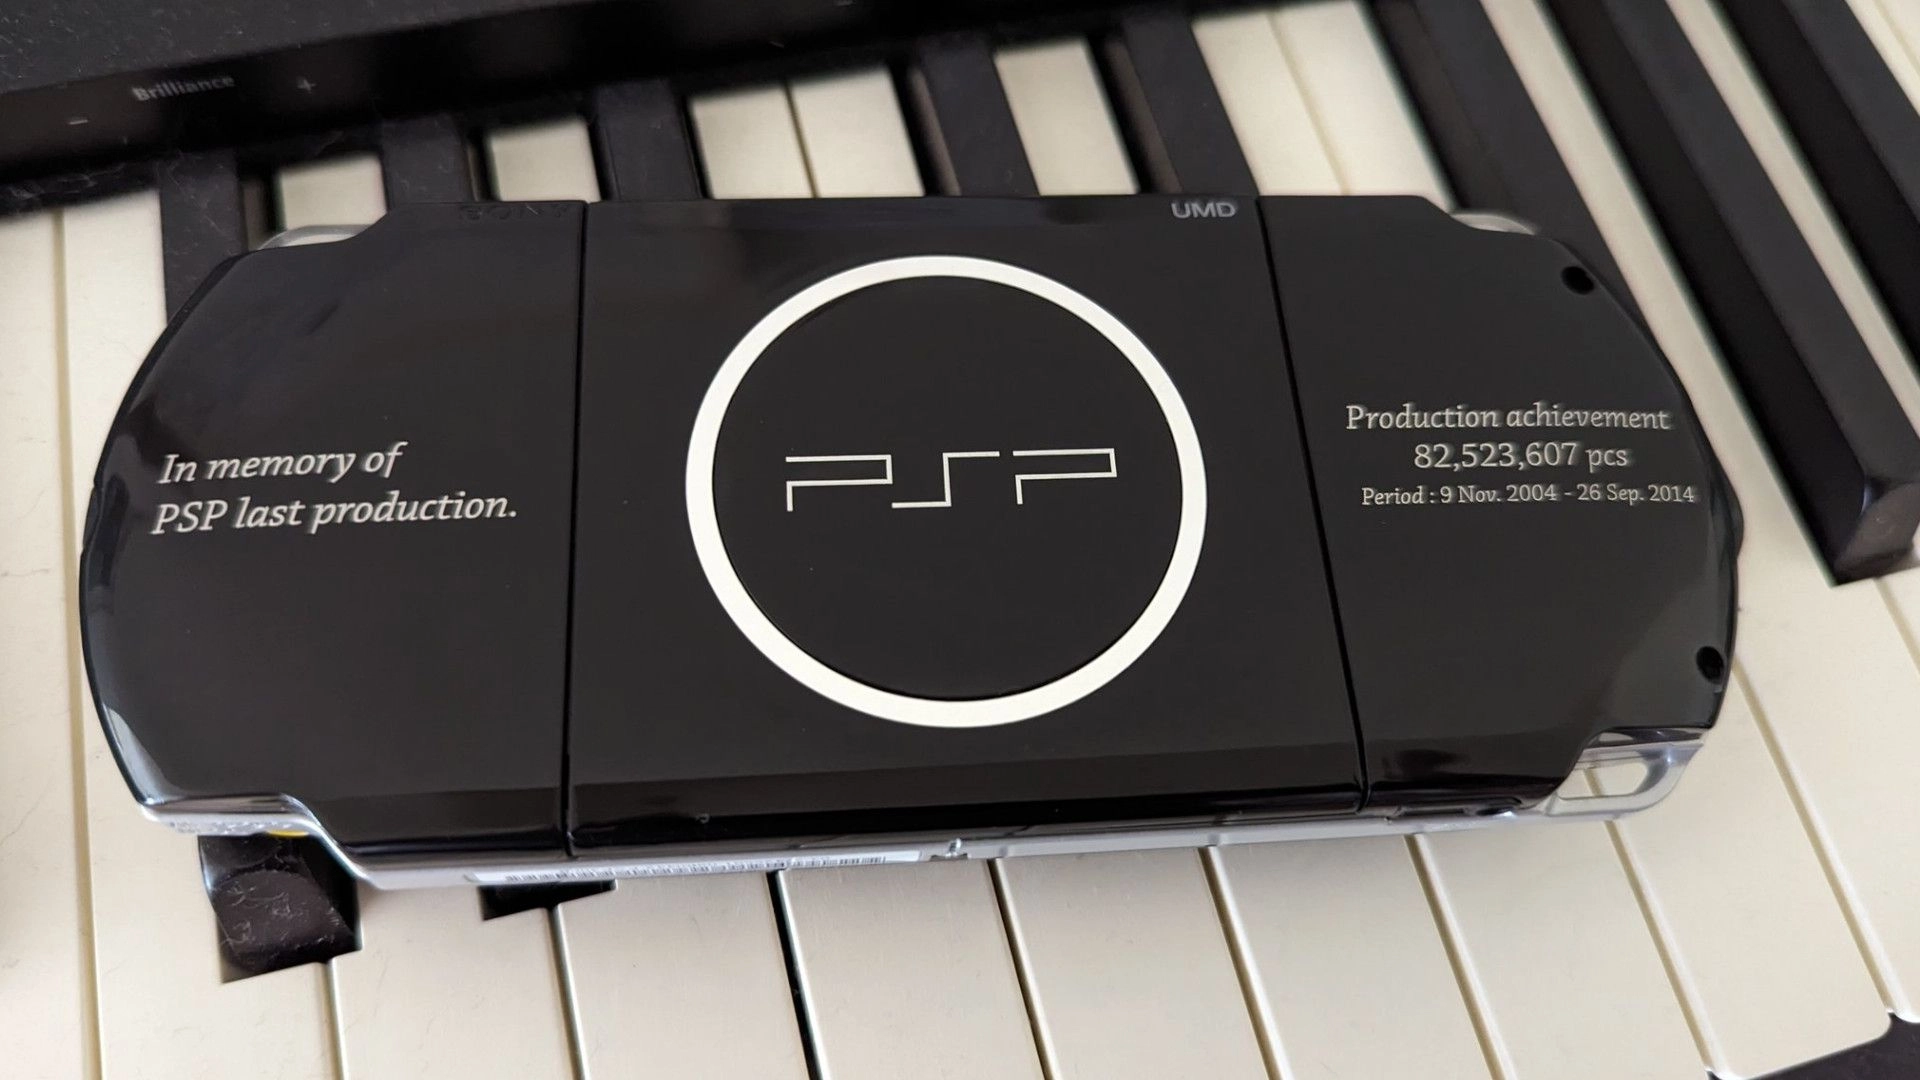 Beloved PlayStation Portable Gets Celebrity Send-off